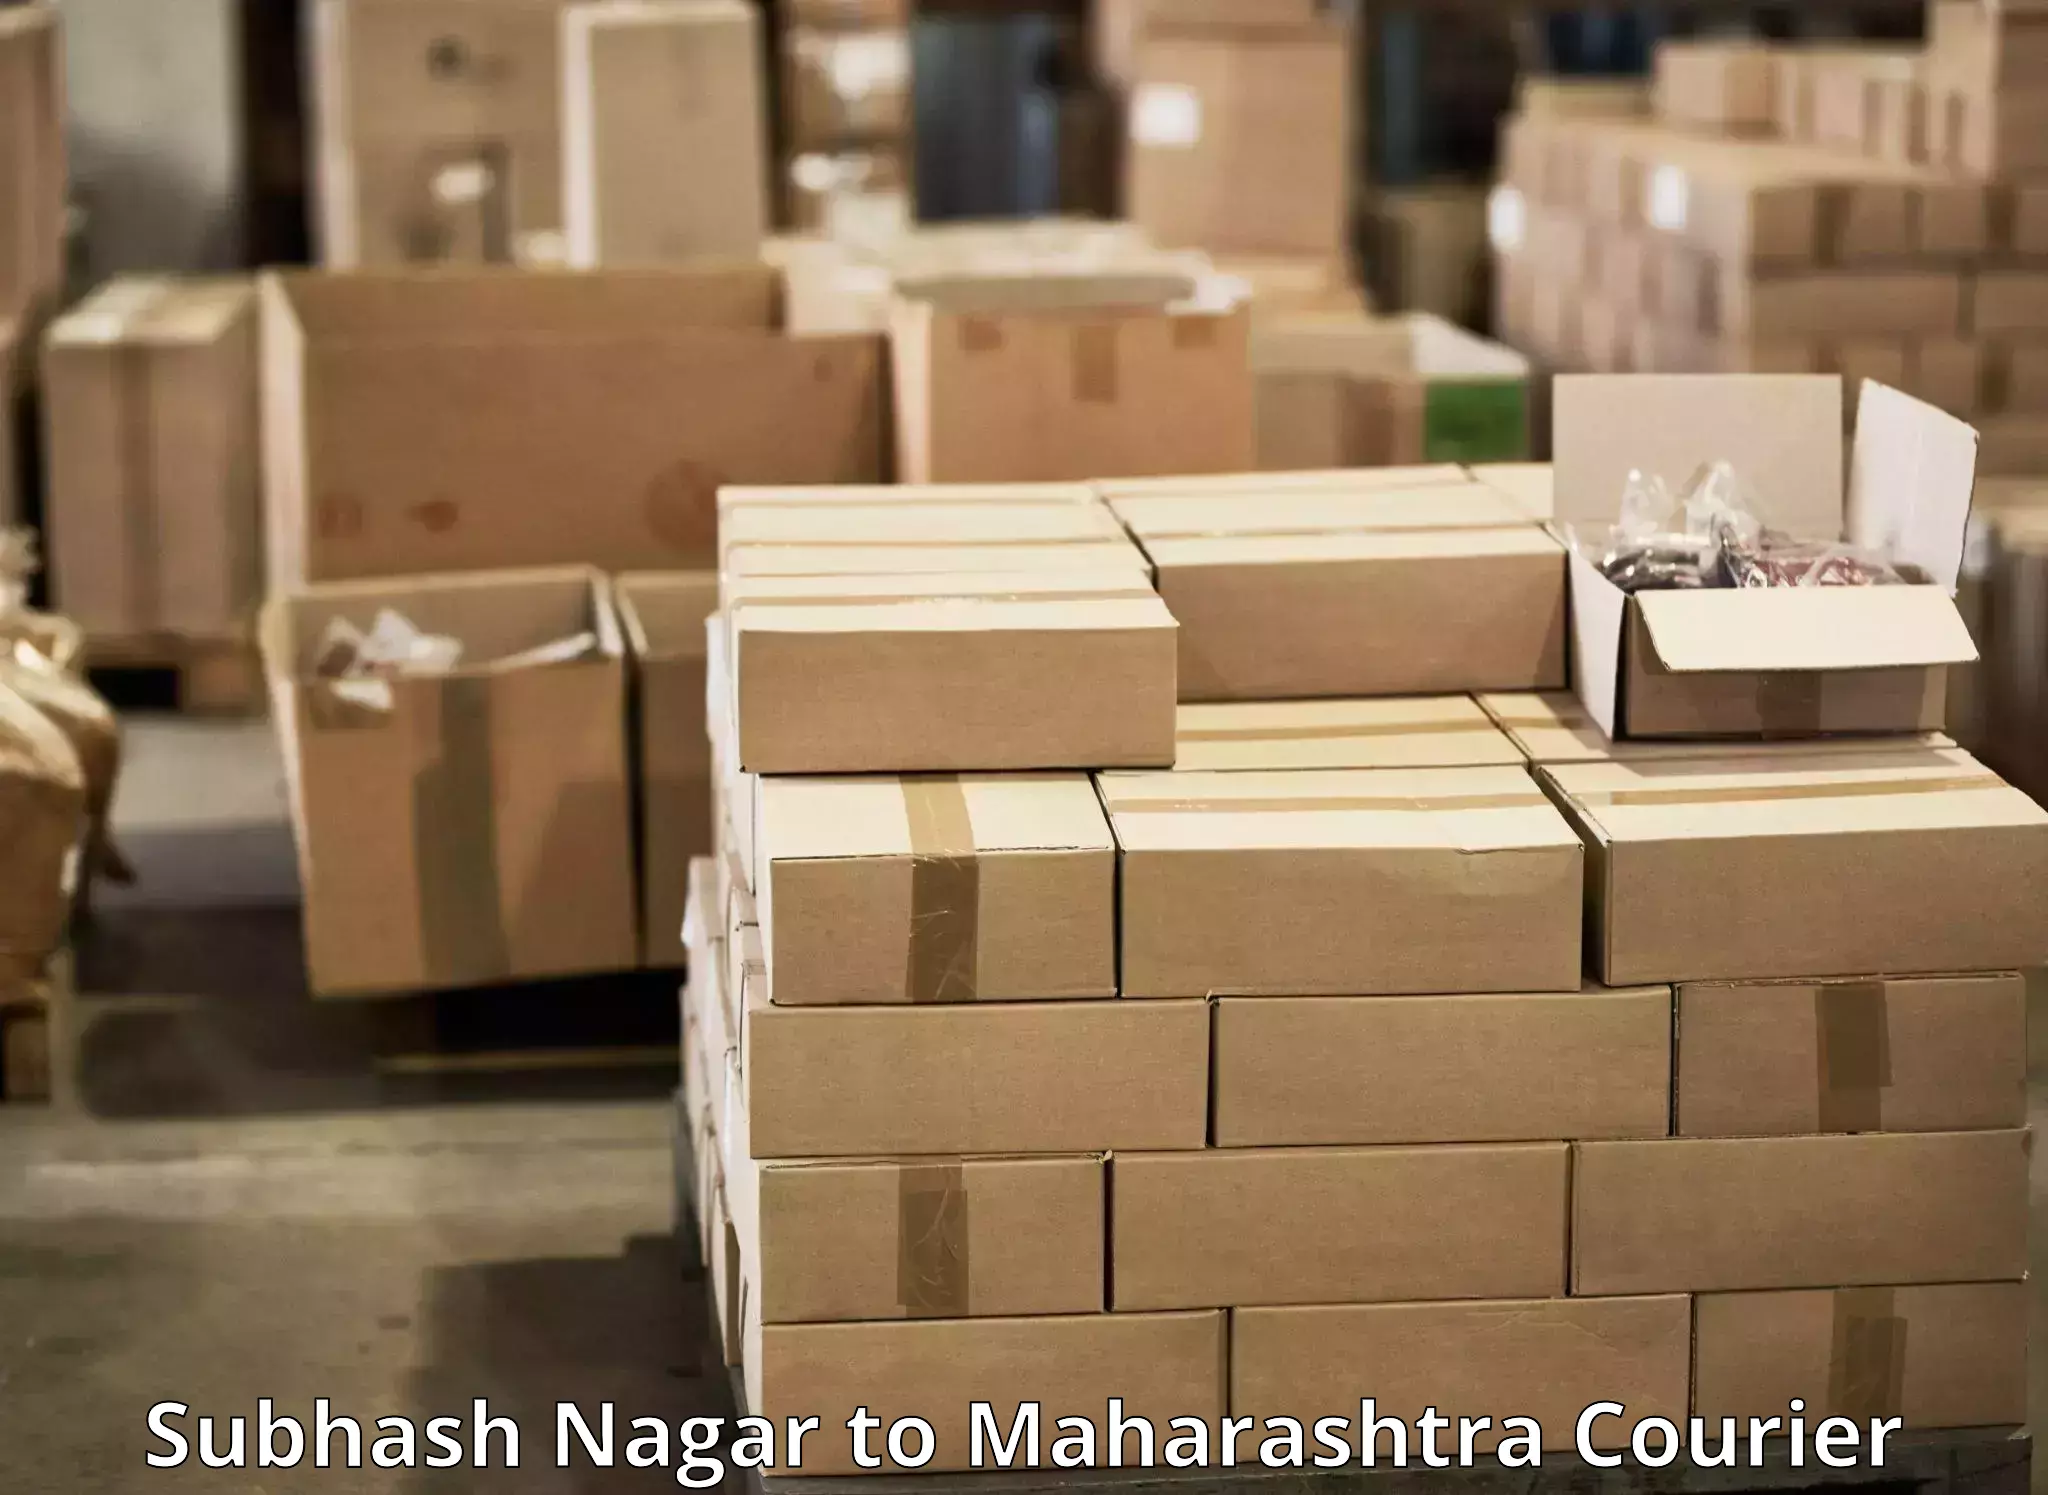 Fast shipping solutions Subhash Nagar to Bhokar